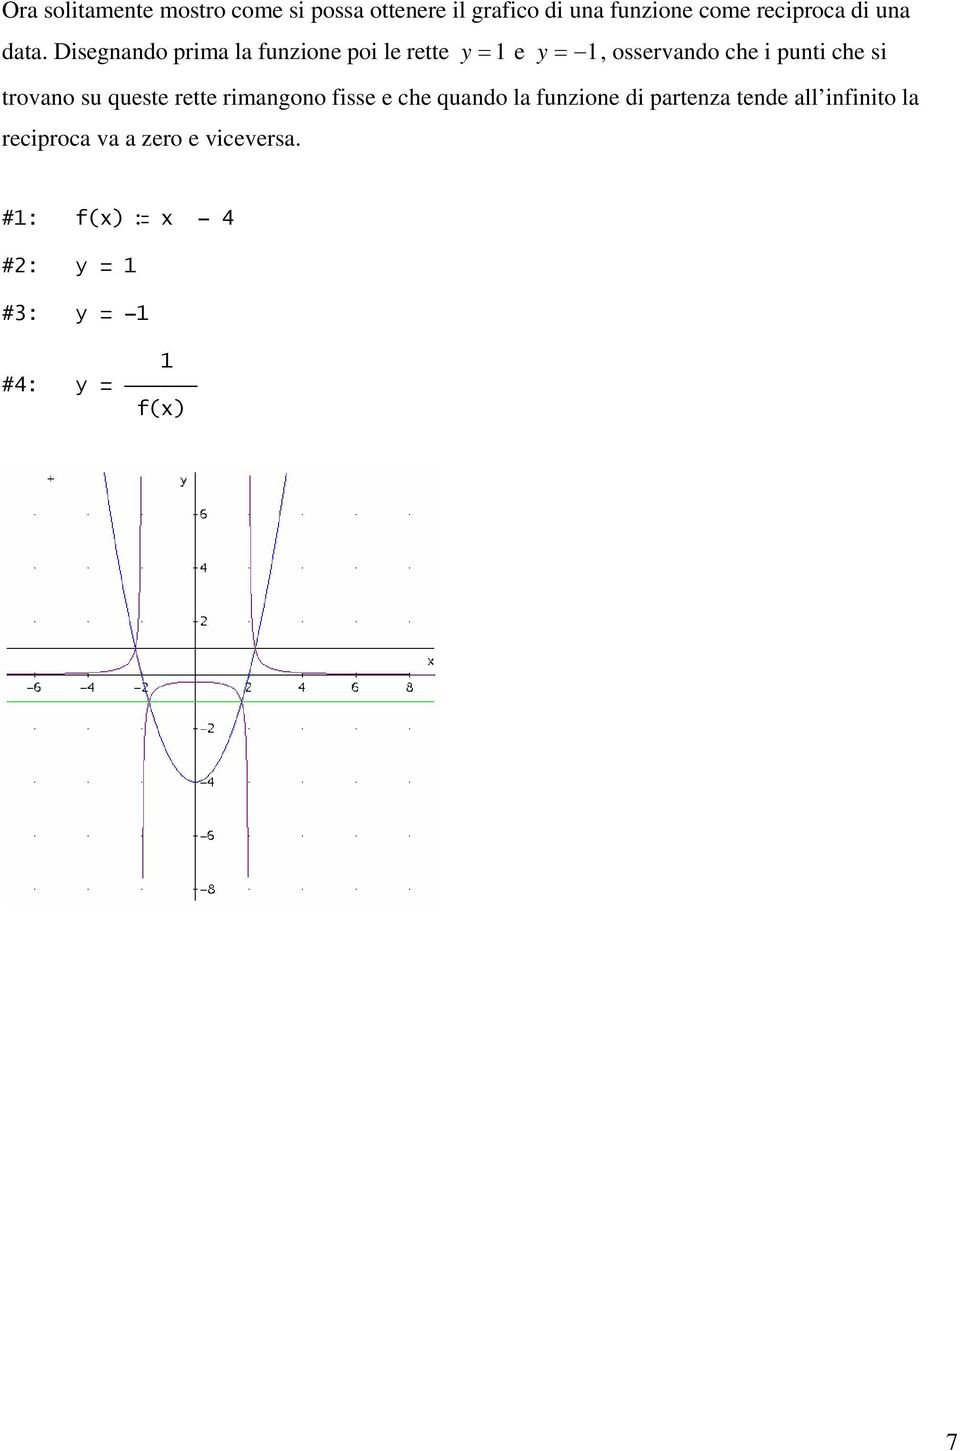 Disegnano prima la funzione poi le rette y = 1 e y = 1, osservano che i punti che si